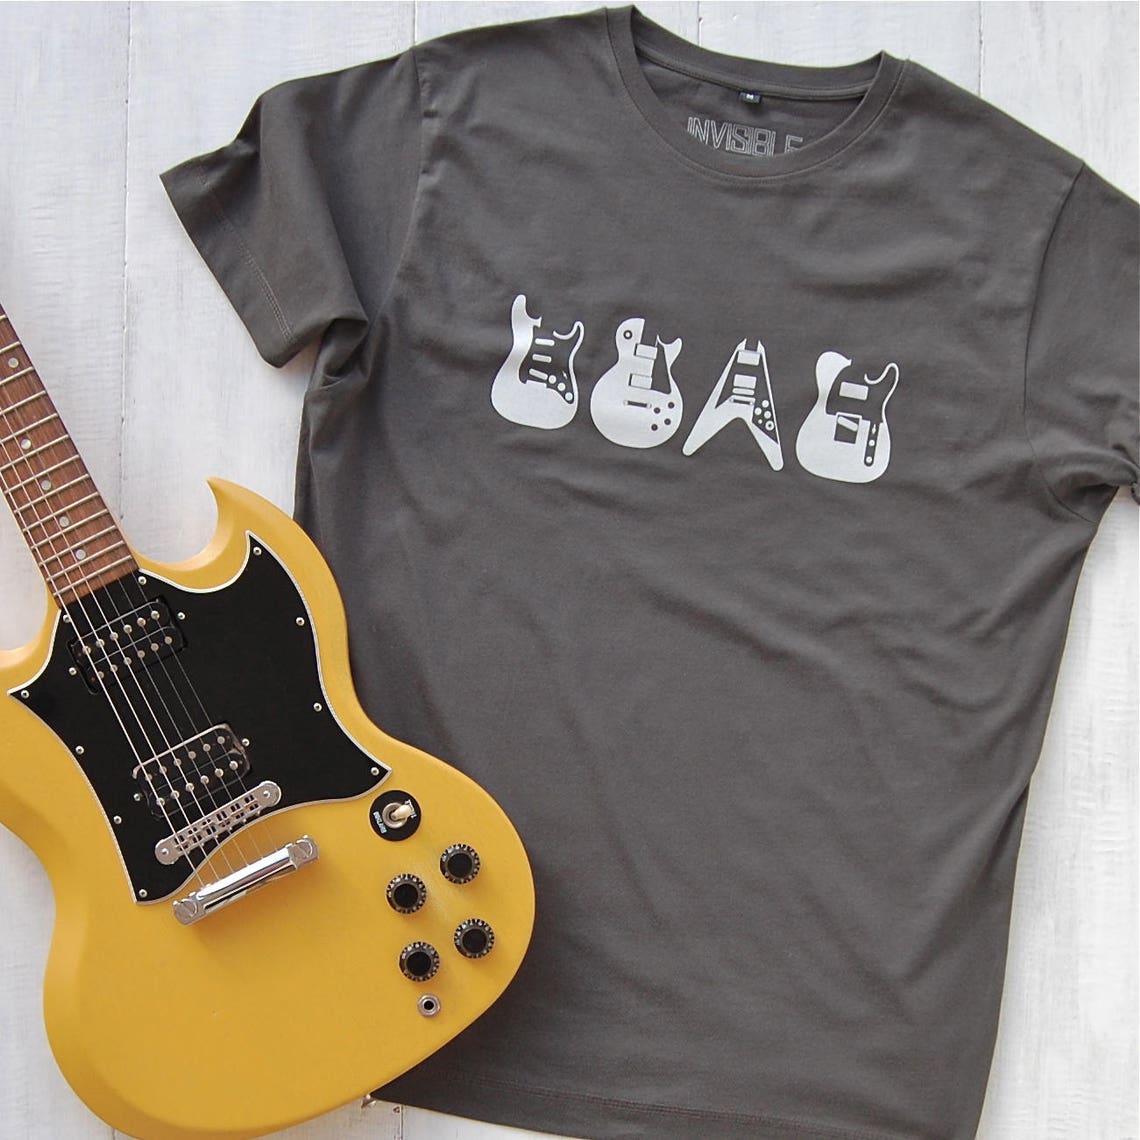 Iconic Guitars Organic Cotton T-shirt - guitar t-shirt